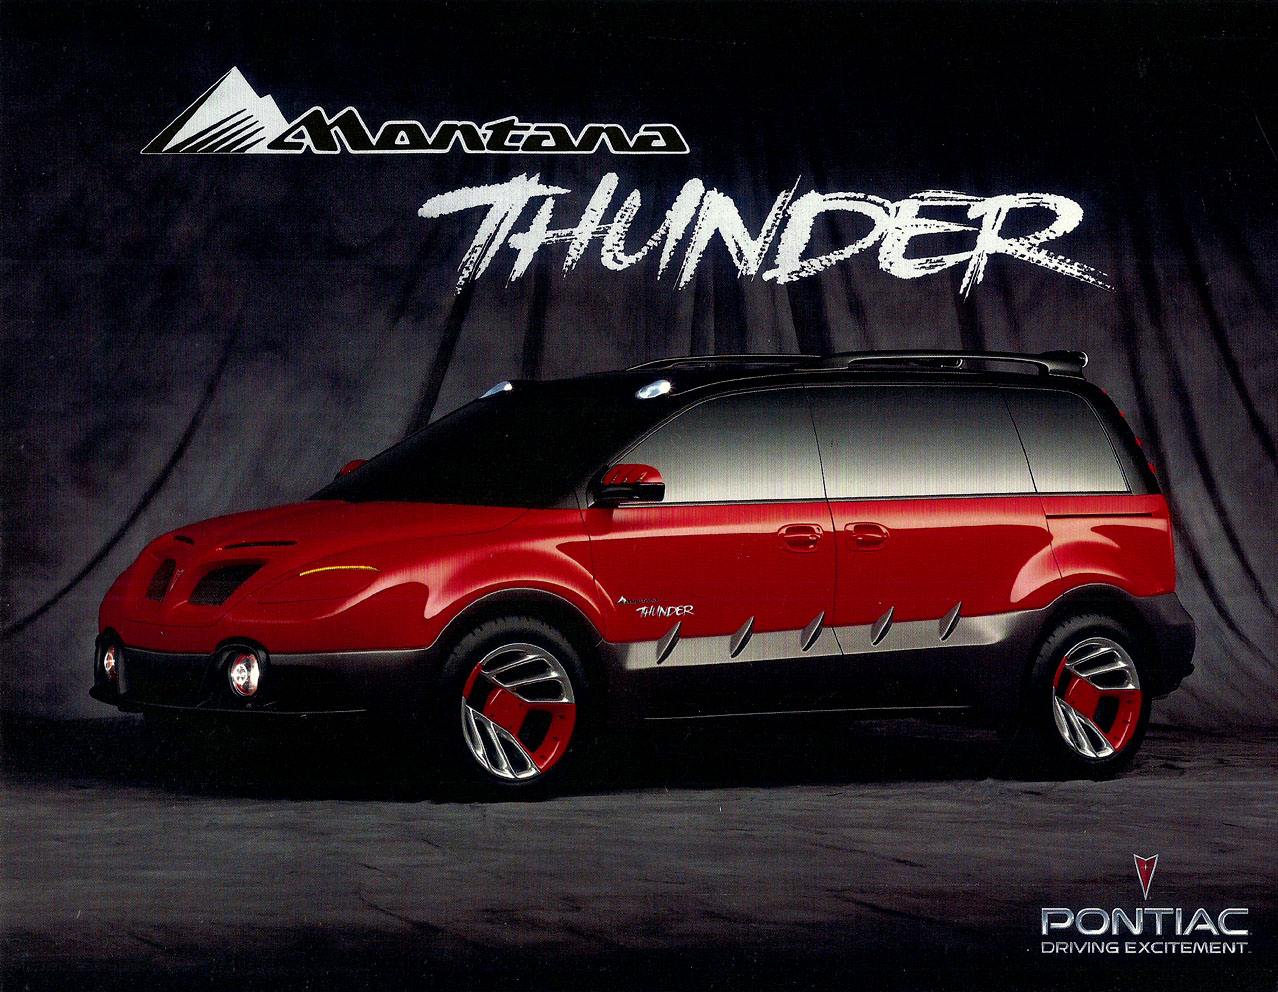 1998_Pontiac_Montana_Thunder_Concept-01